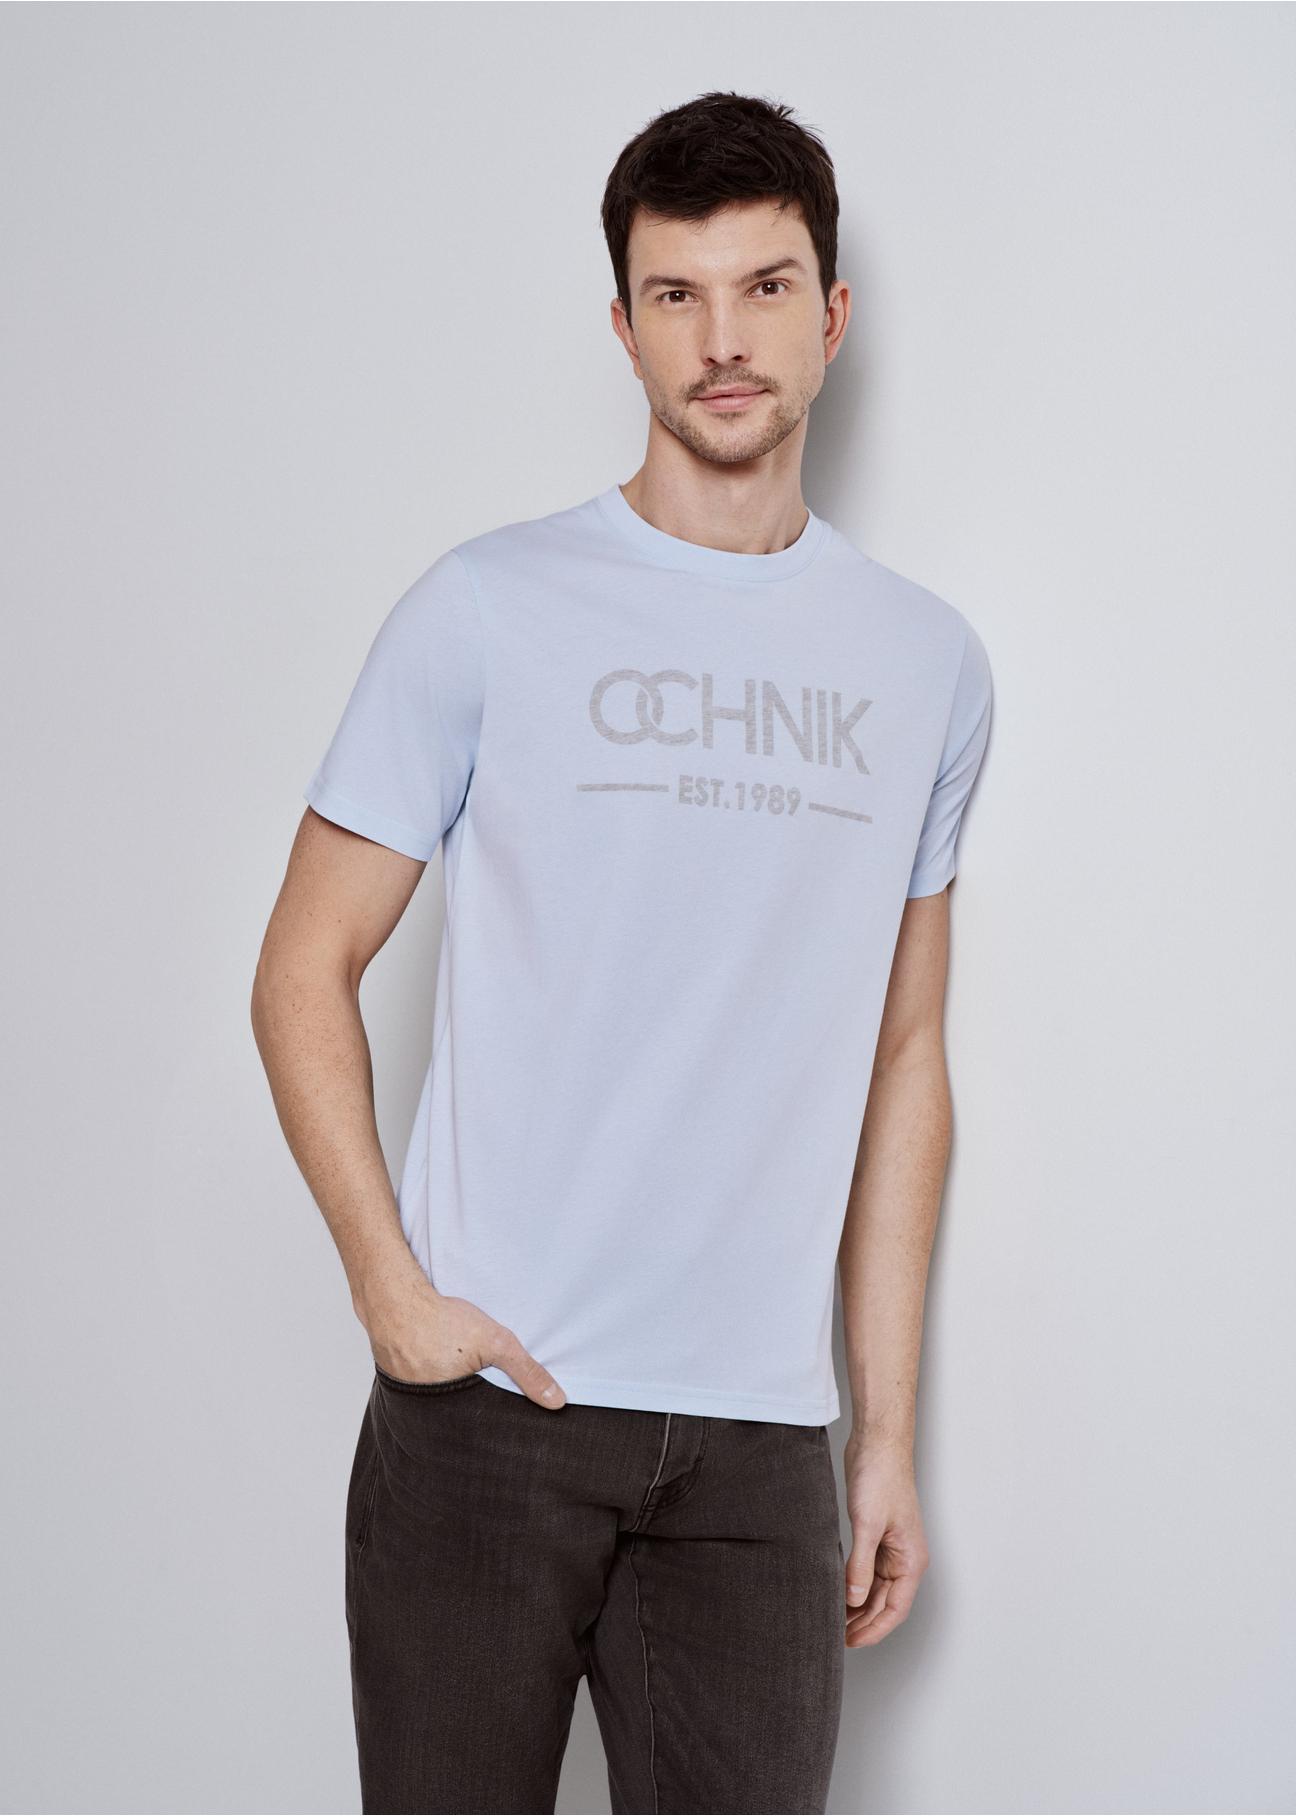 Błękitny T-shirt męski z logo TSHMT-0095-62(W24)